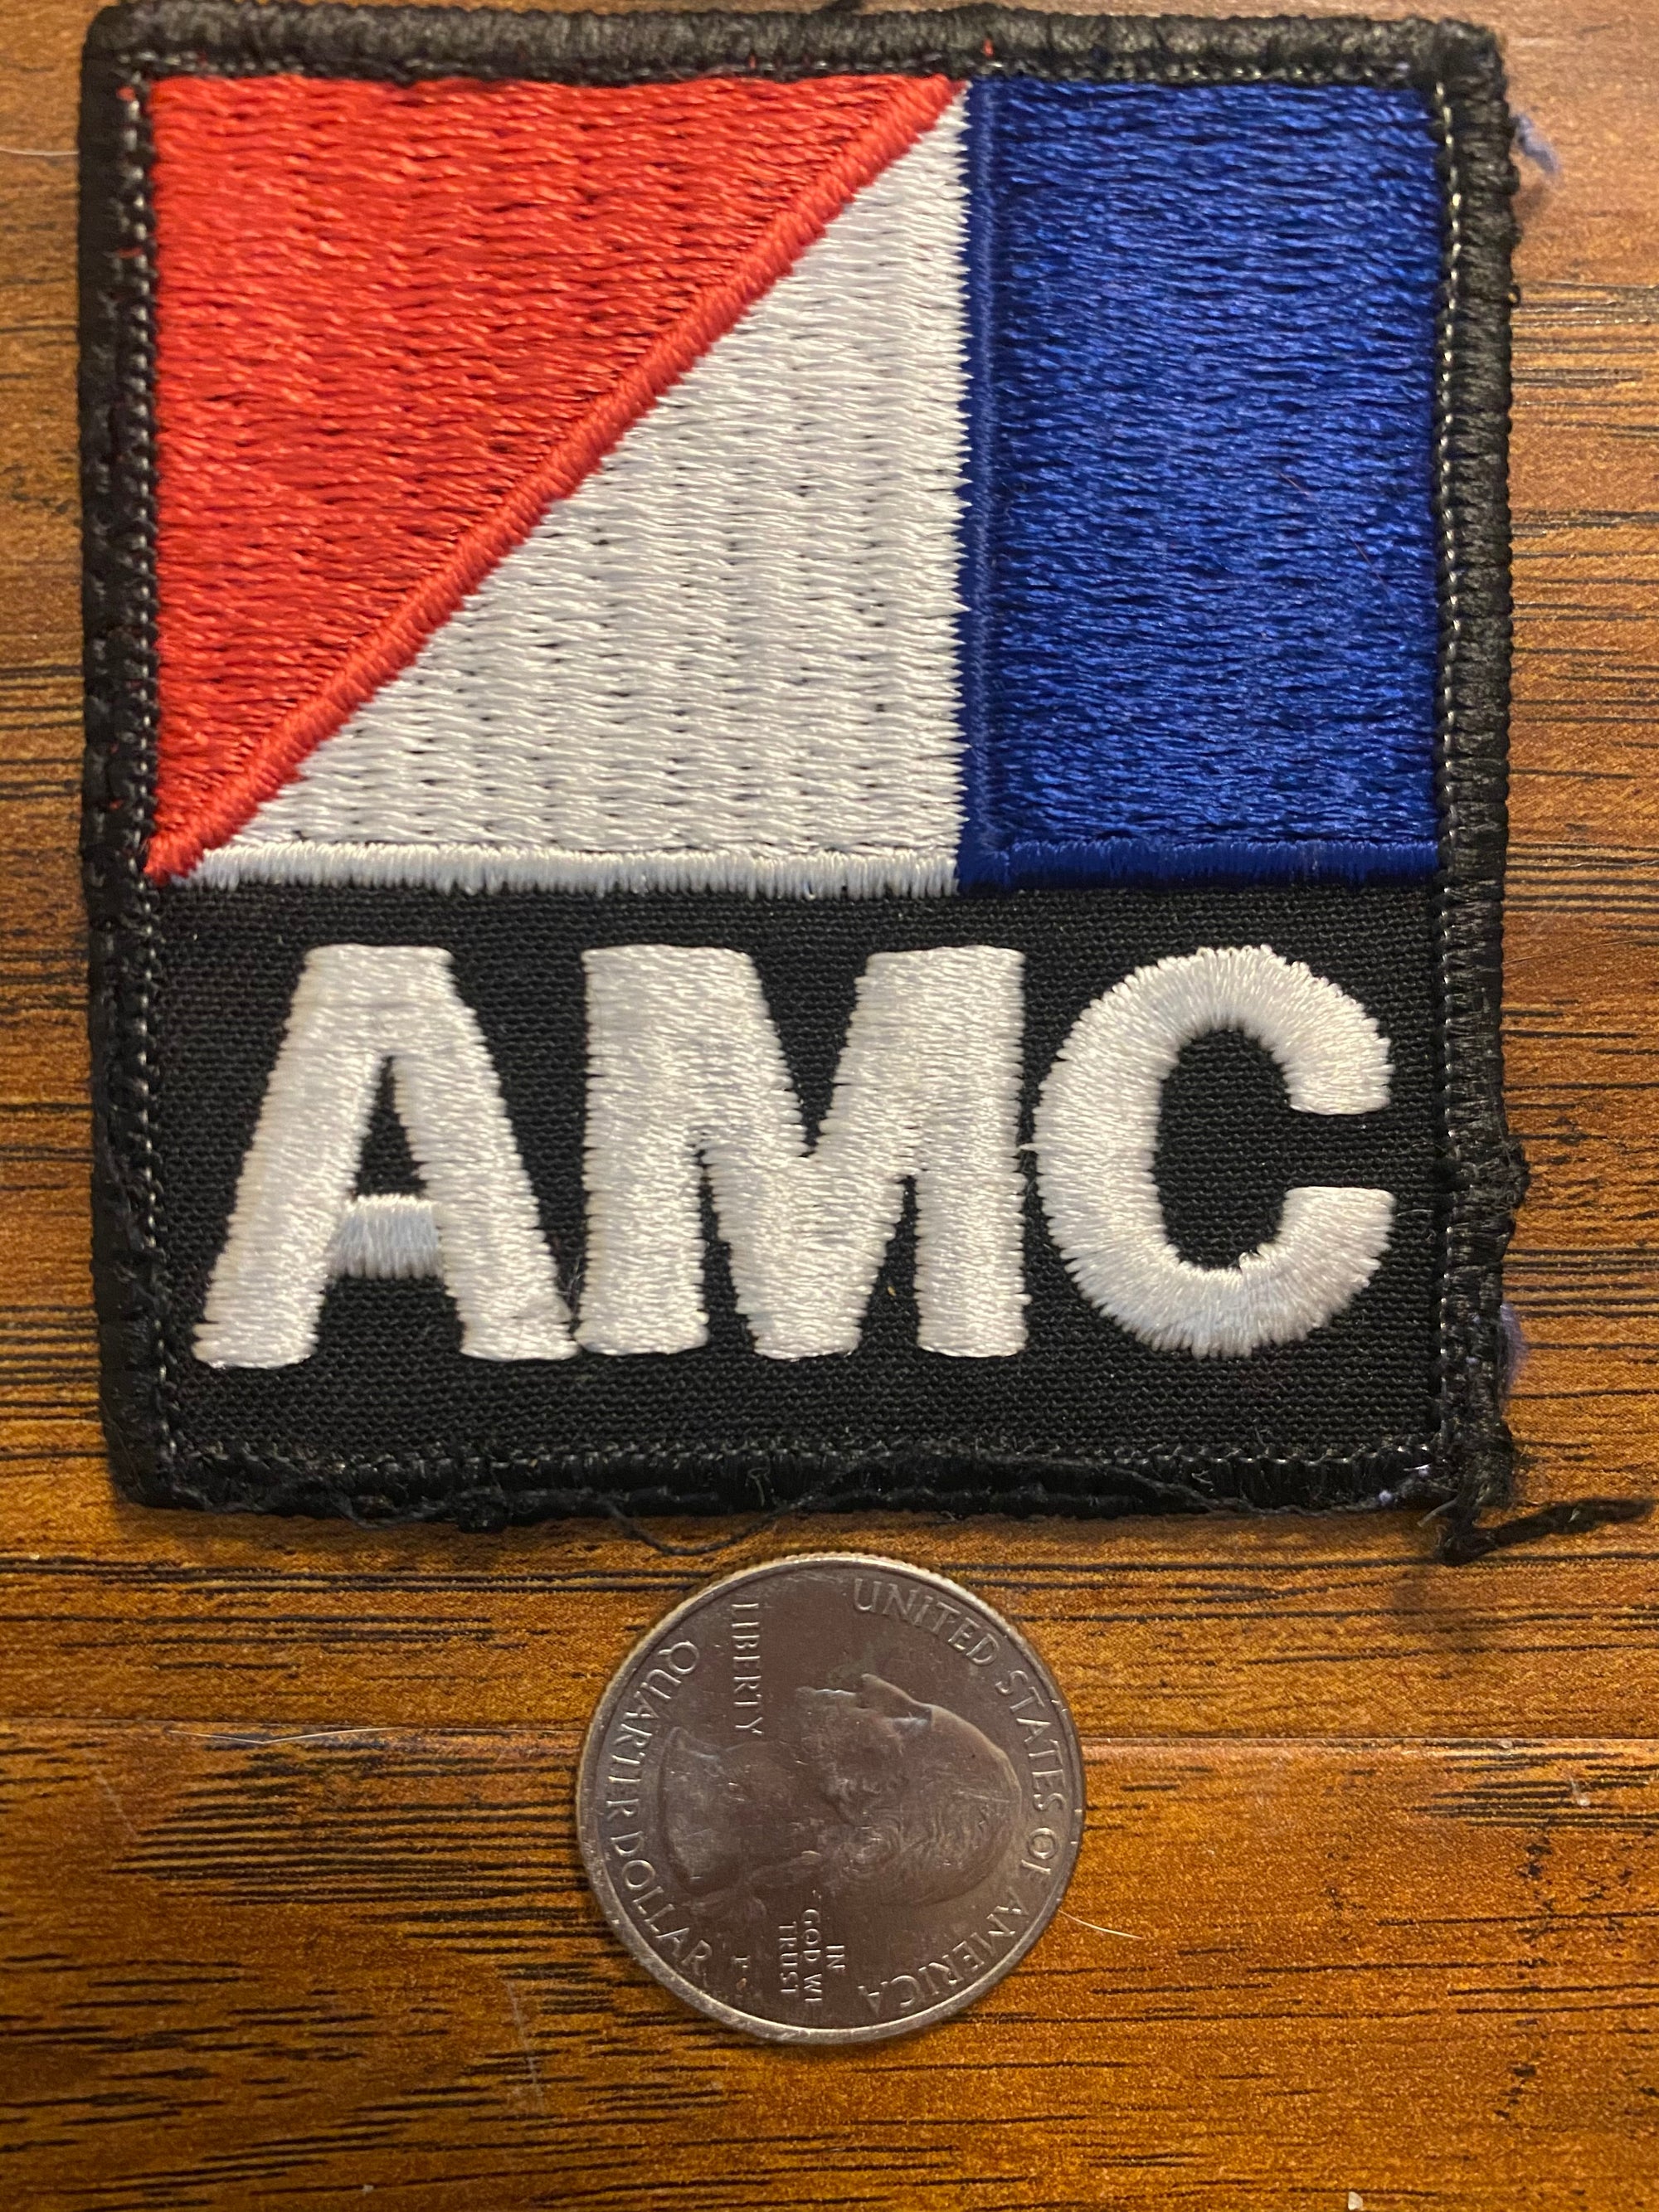 Vintage AMC